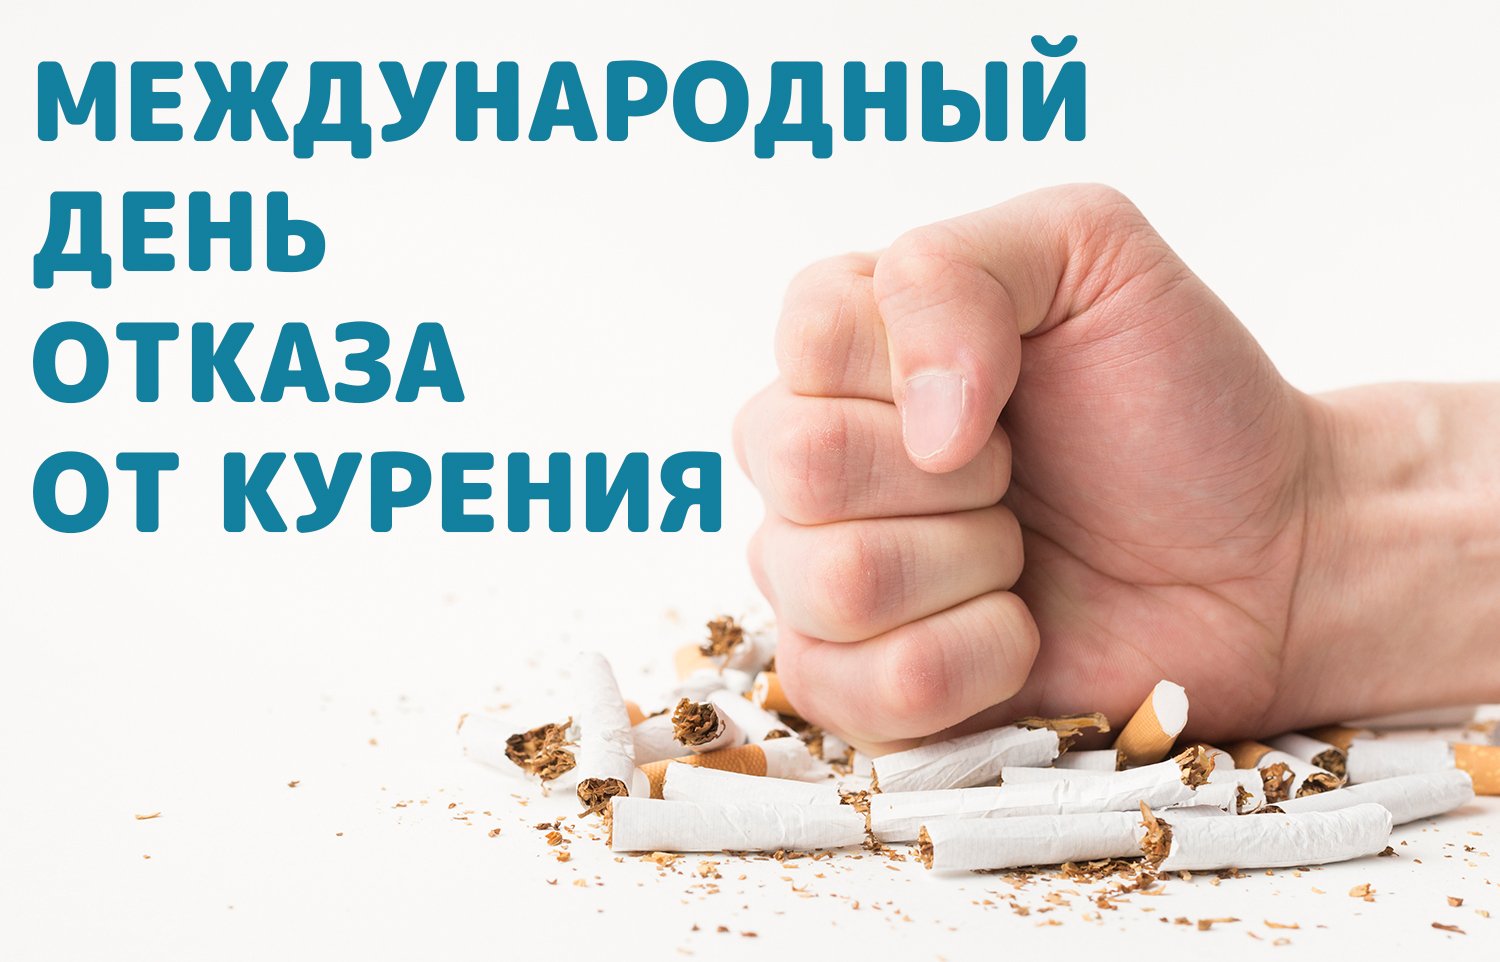 Международный день отказа от курения в этом году - 16 ноября